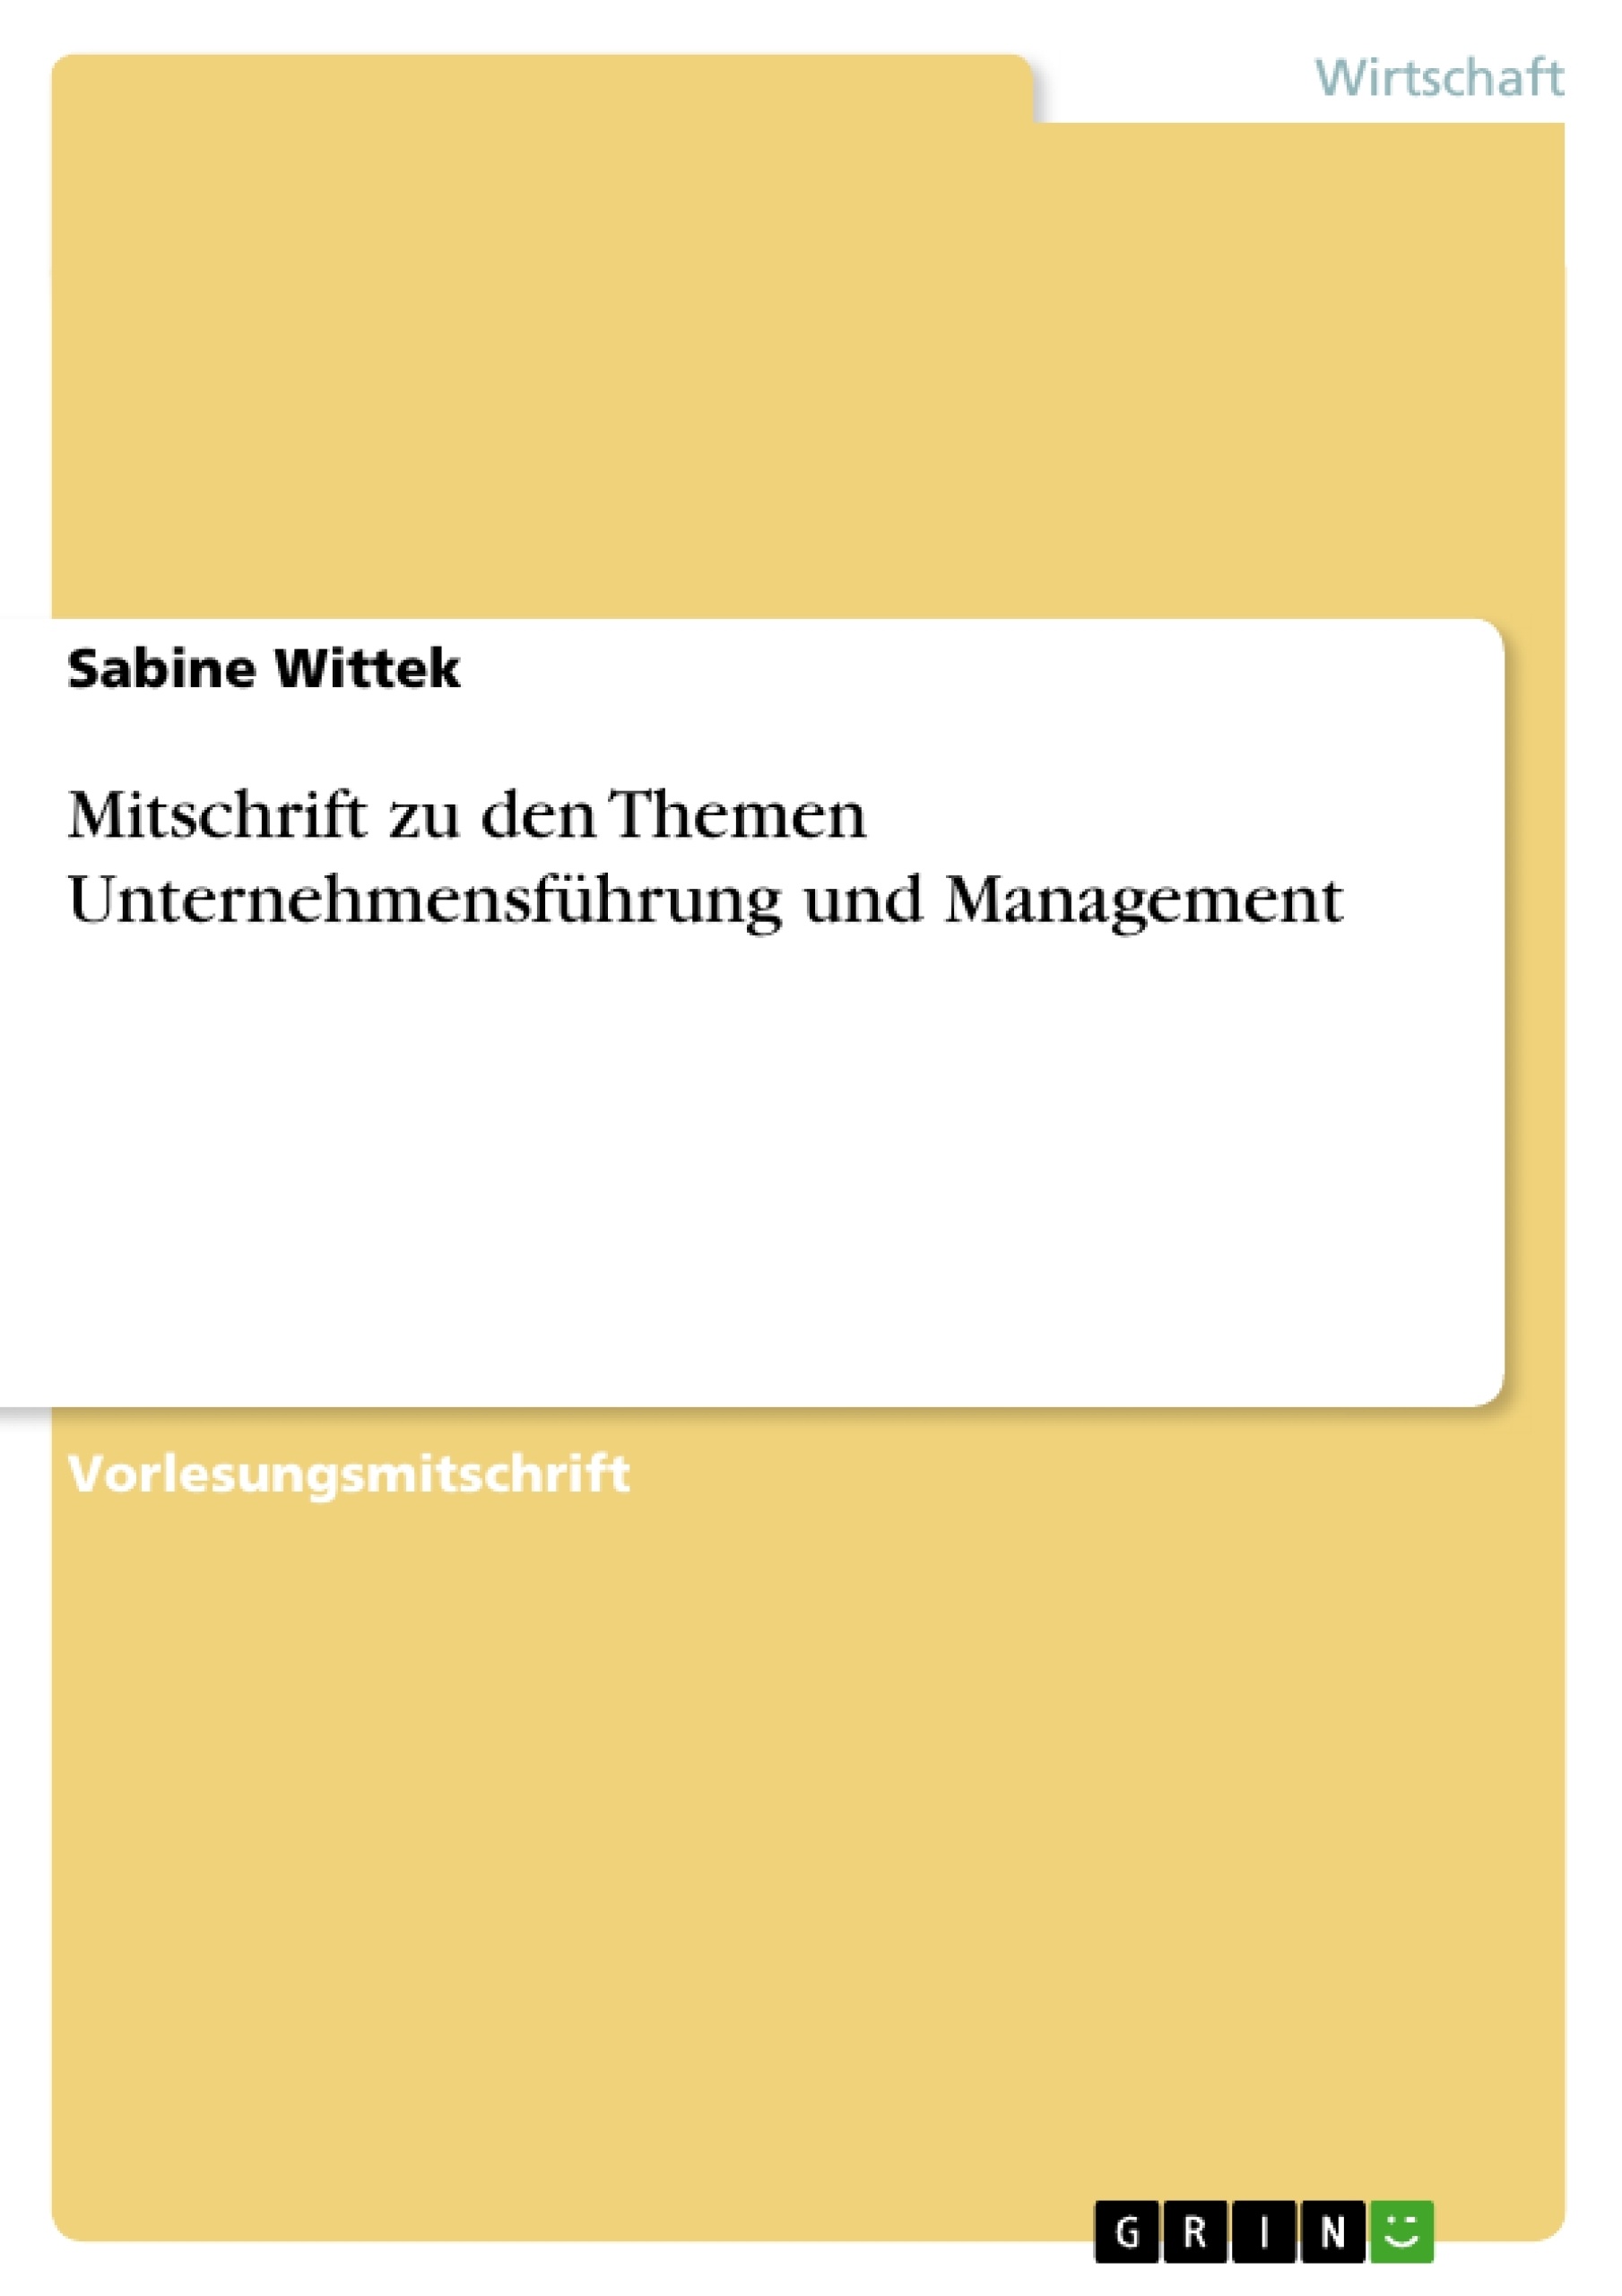 Title: Mitschrift zu den Themen Unternehmensführung und Management